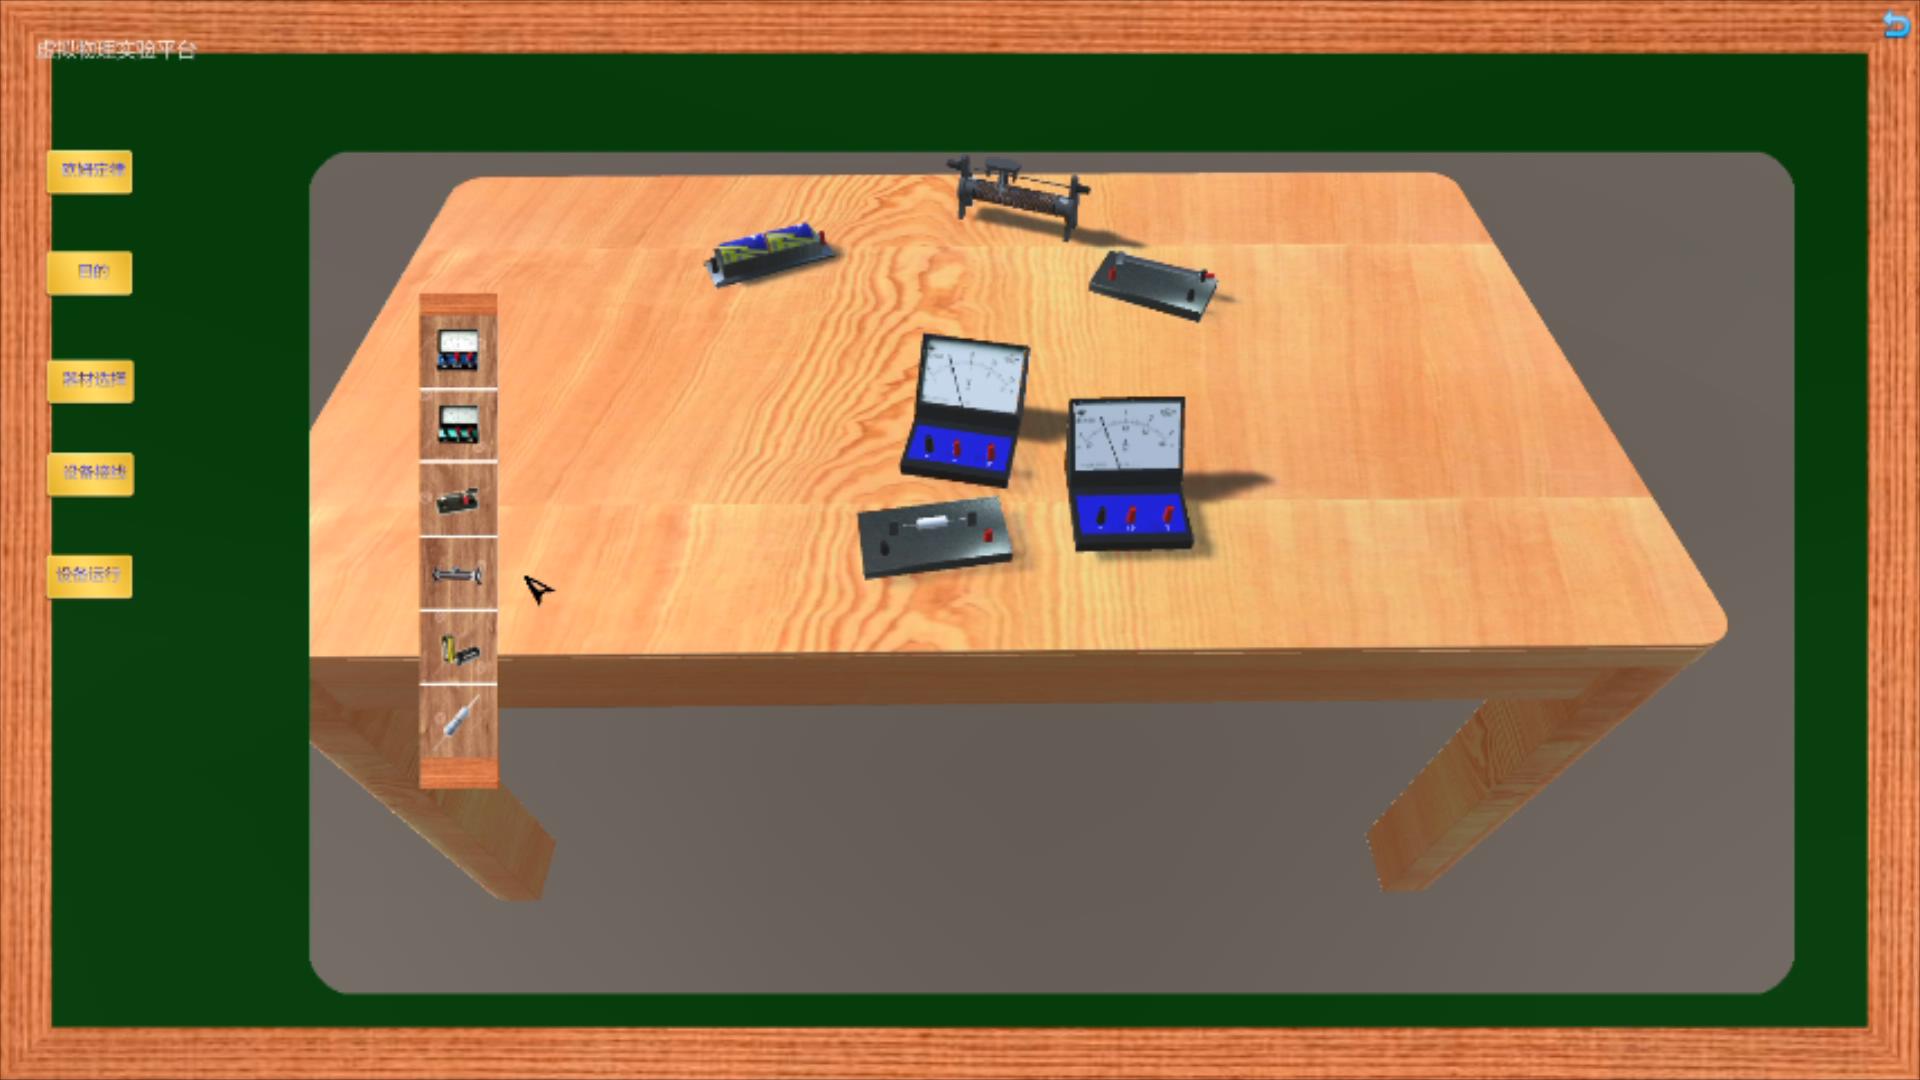 虚拟现实与游戏竞赛作品——e实验——电学实验教学辅助平台